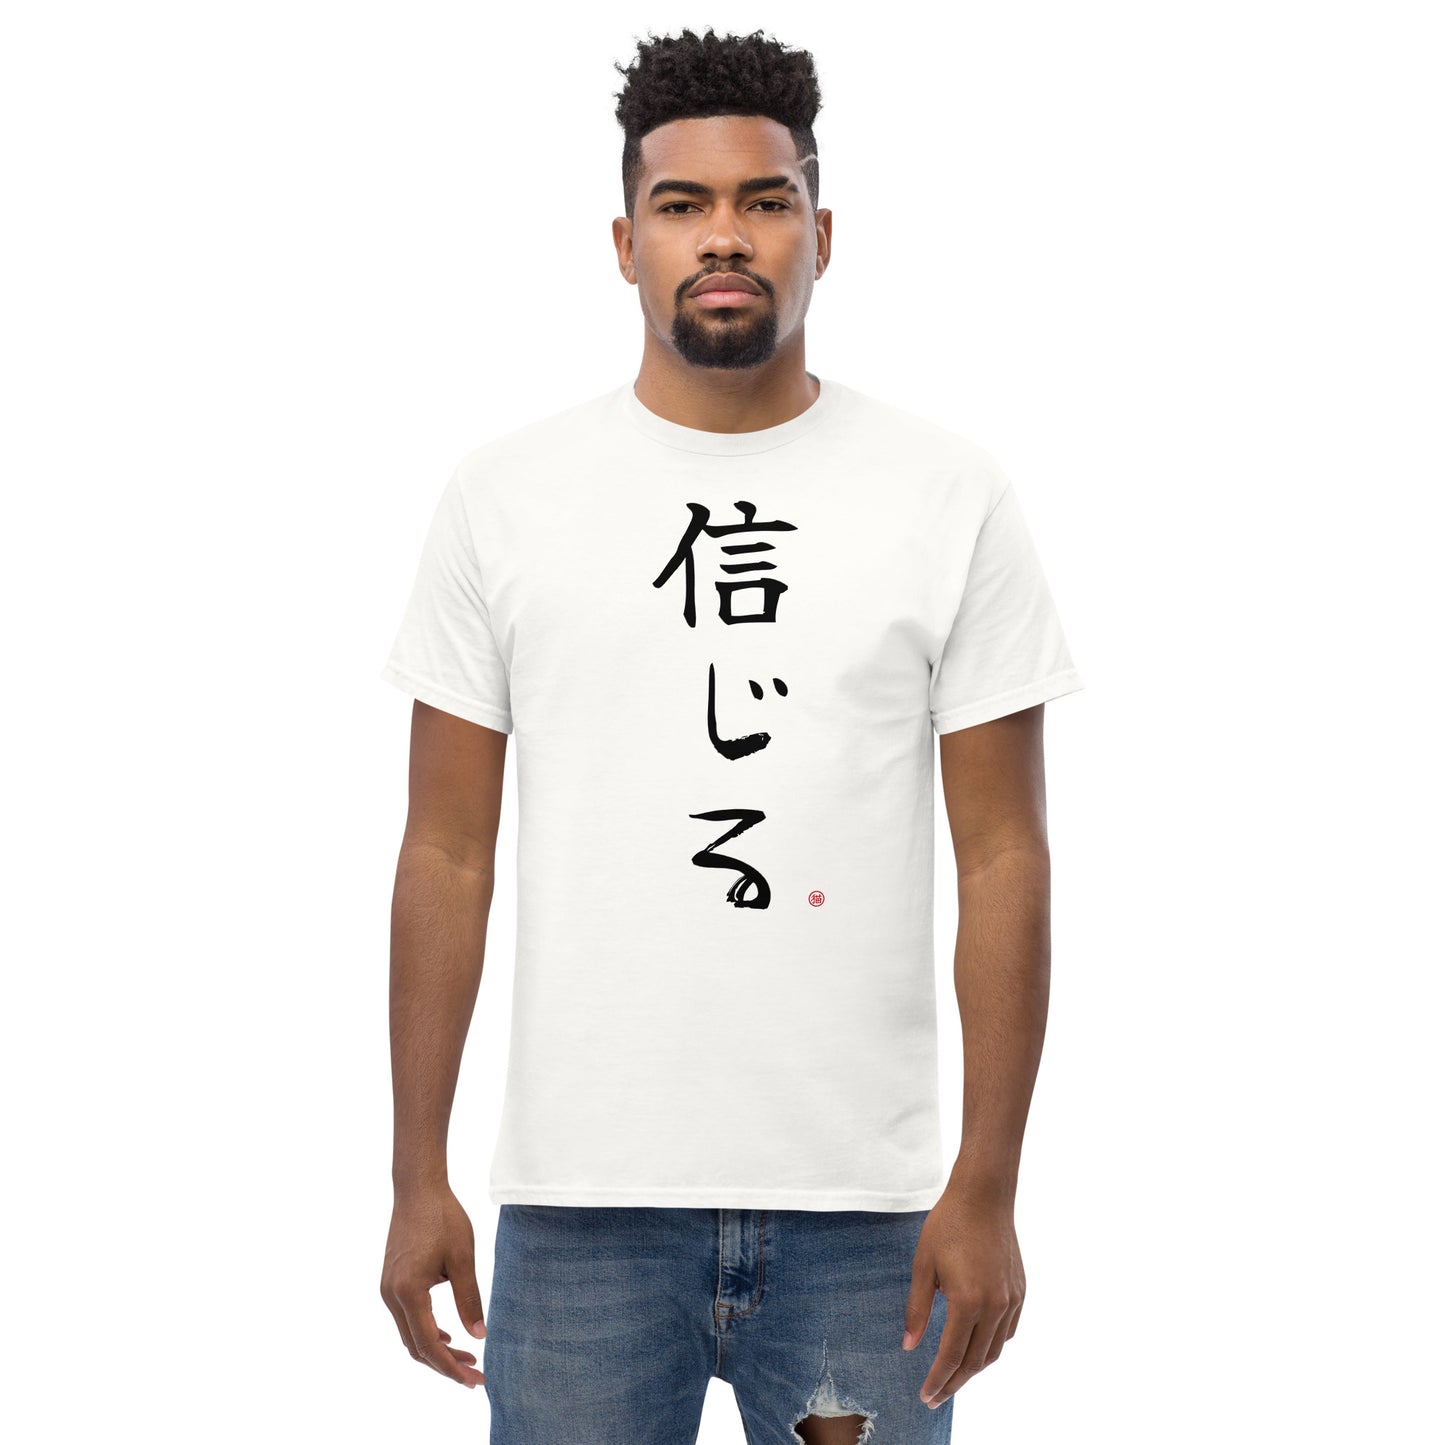 Believe-Written in Kanji